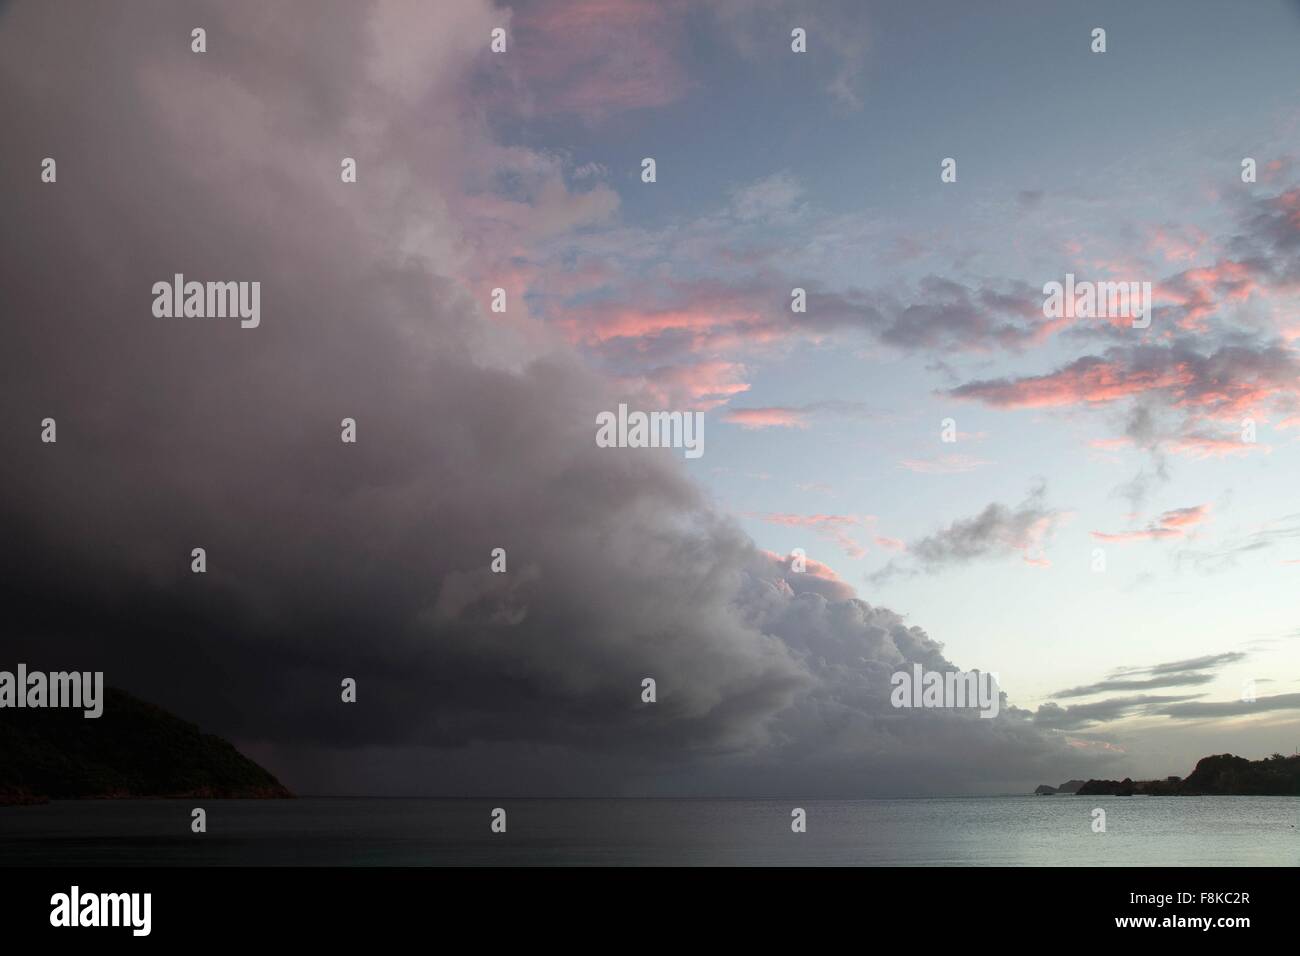 Nuage tempête spectaculaire littoral, près de St.Thomas, Îles Vierges Américaines Banque D'Images